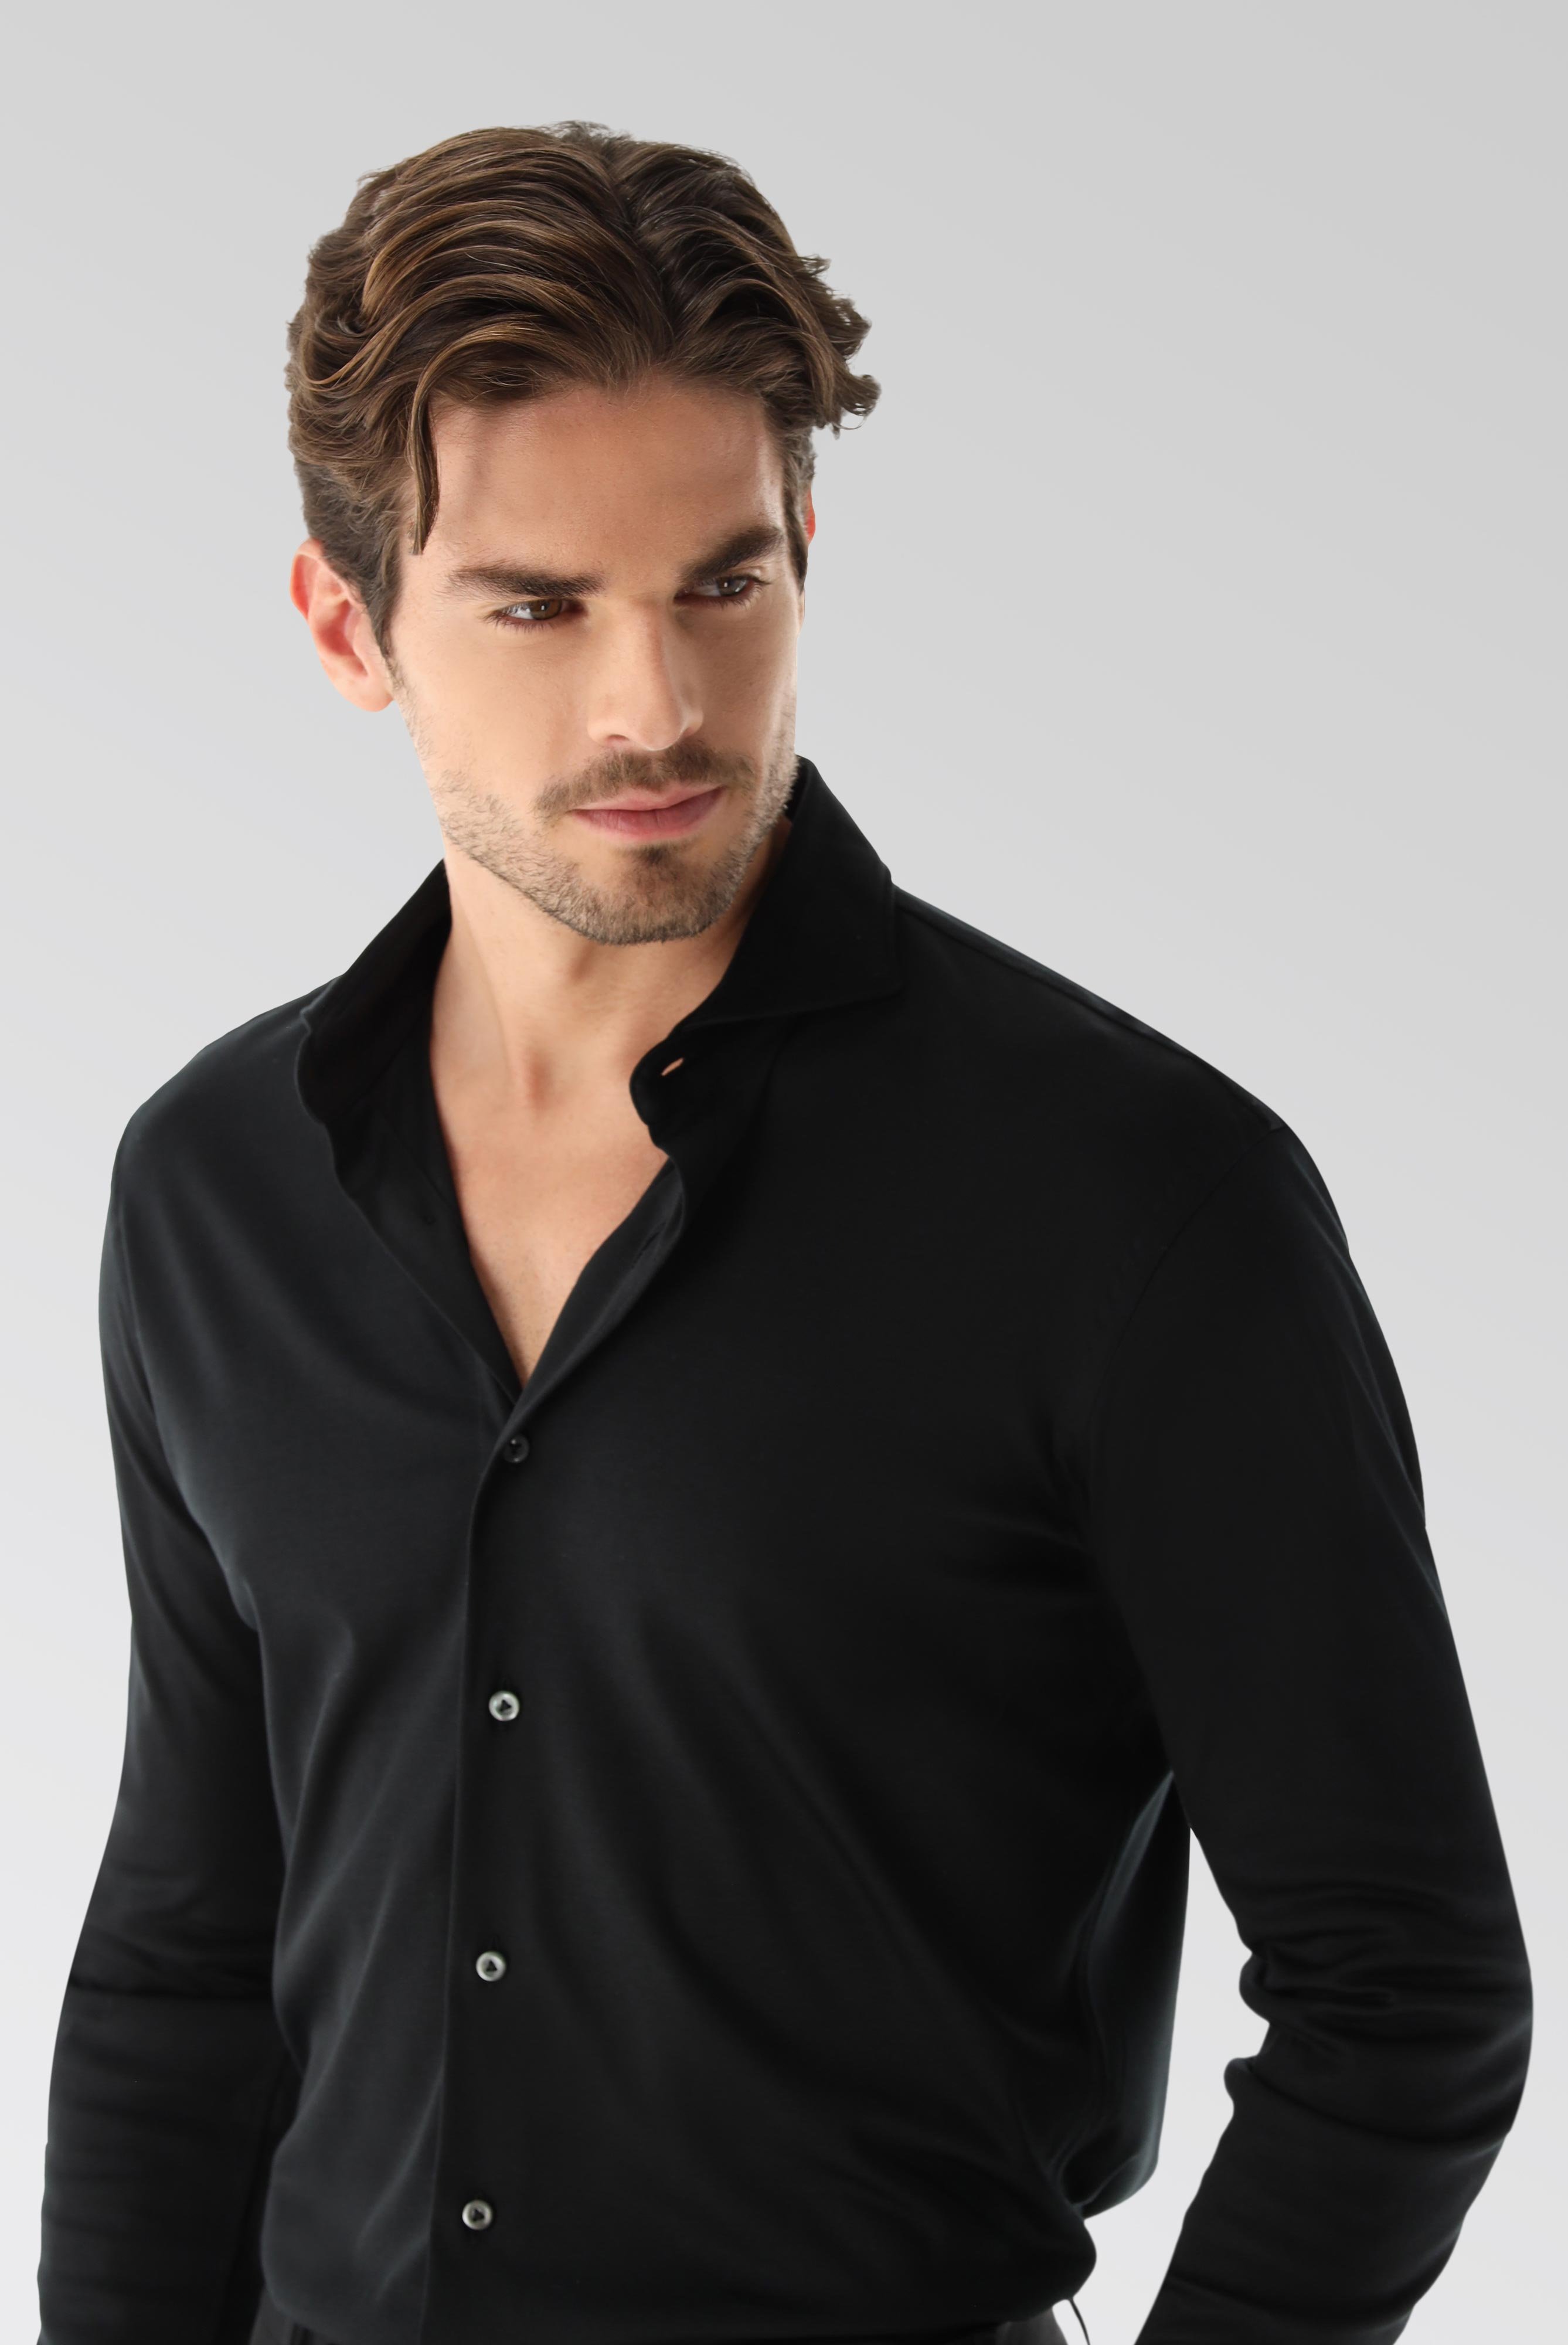 Bügelleichte Hemden+Jersey Hemd mit glänzender Optik Tailor Fit+20.1683.UC.180031.099.X4L